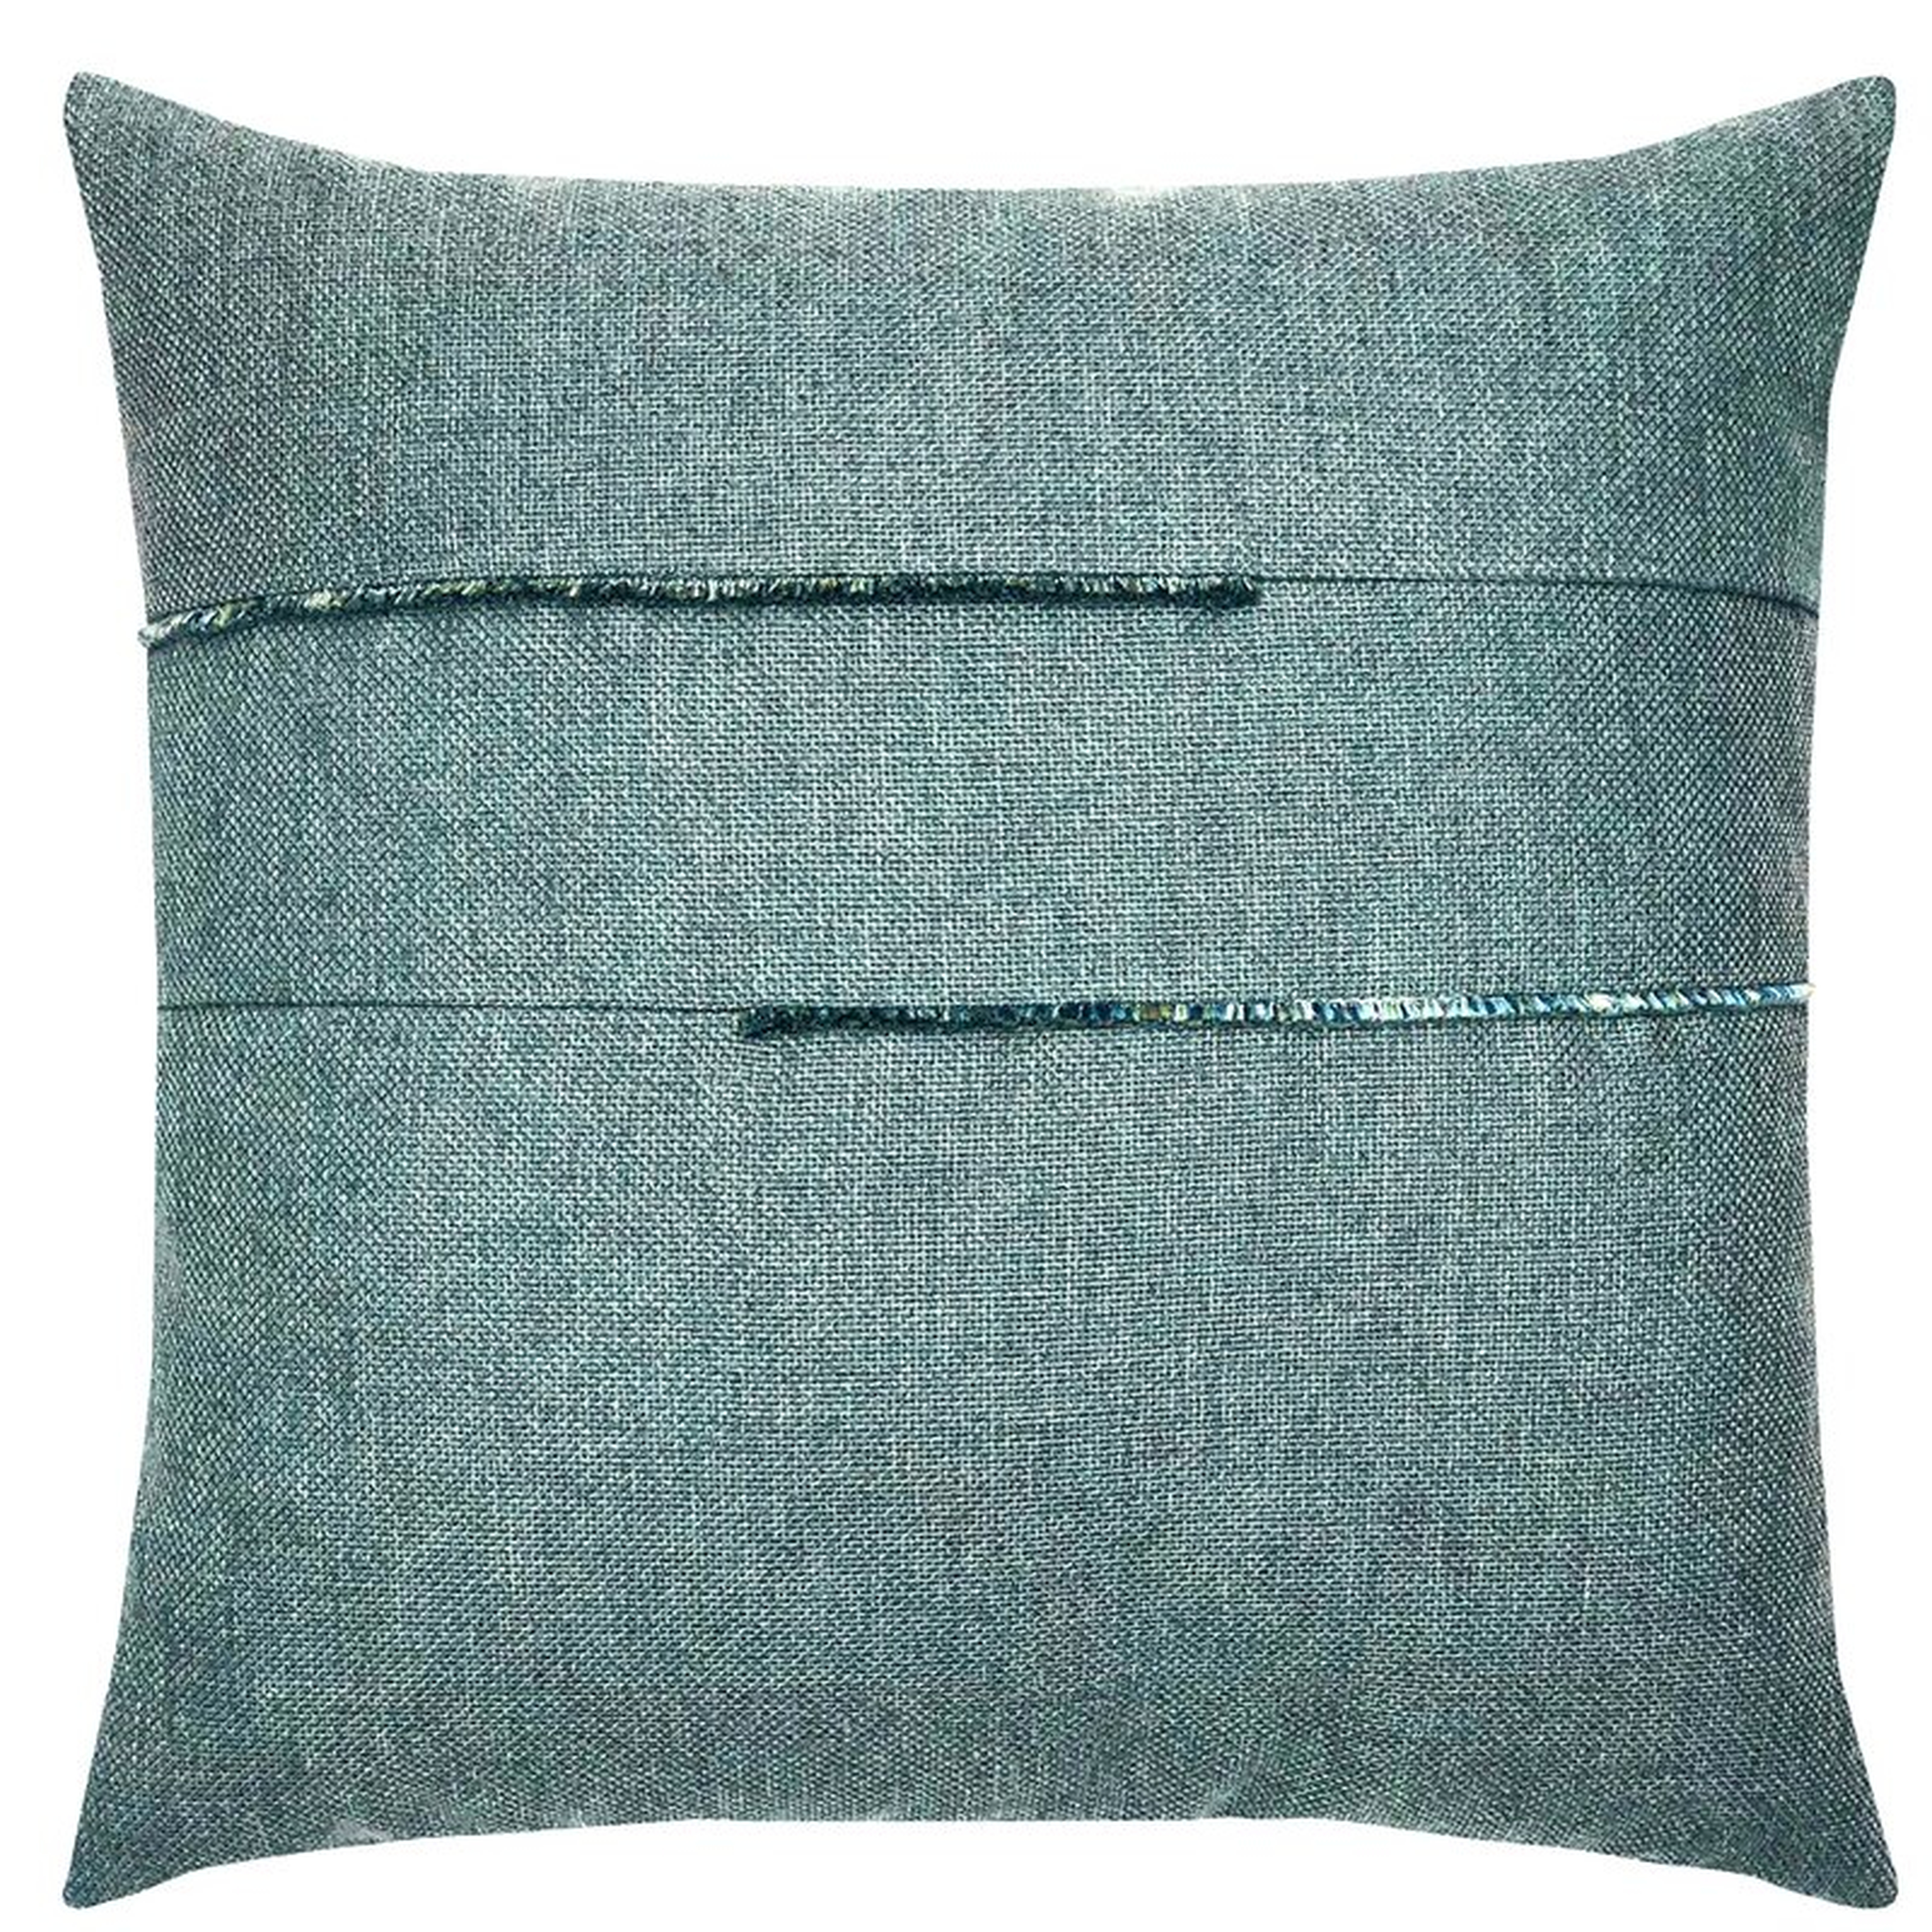 Elaine Smith Micro Fringe Seaglass Sunbrella Indoor/Outdoor Throw Pillow Color: Blue - Perigold